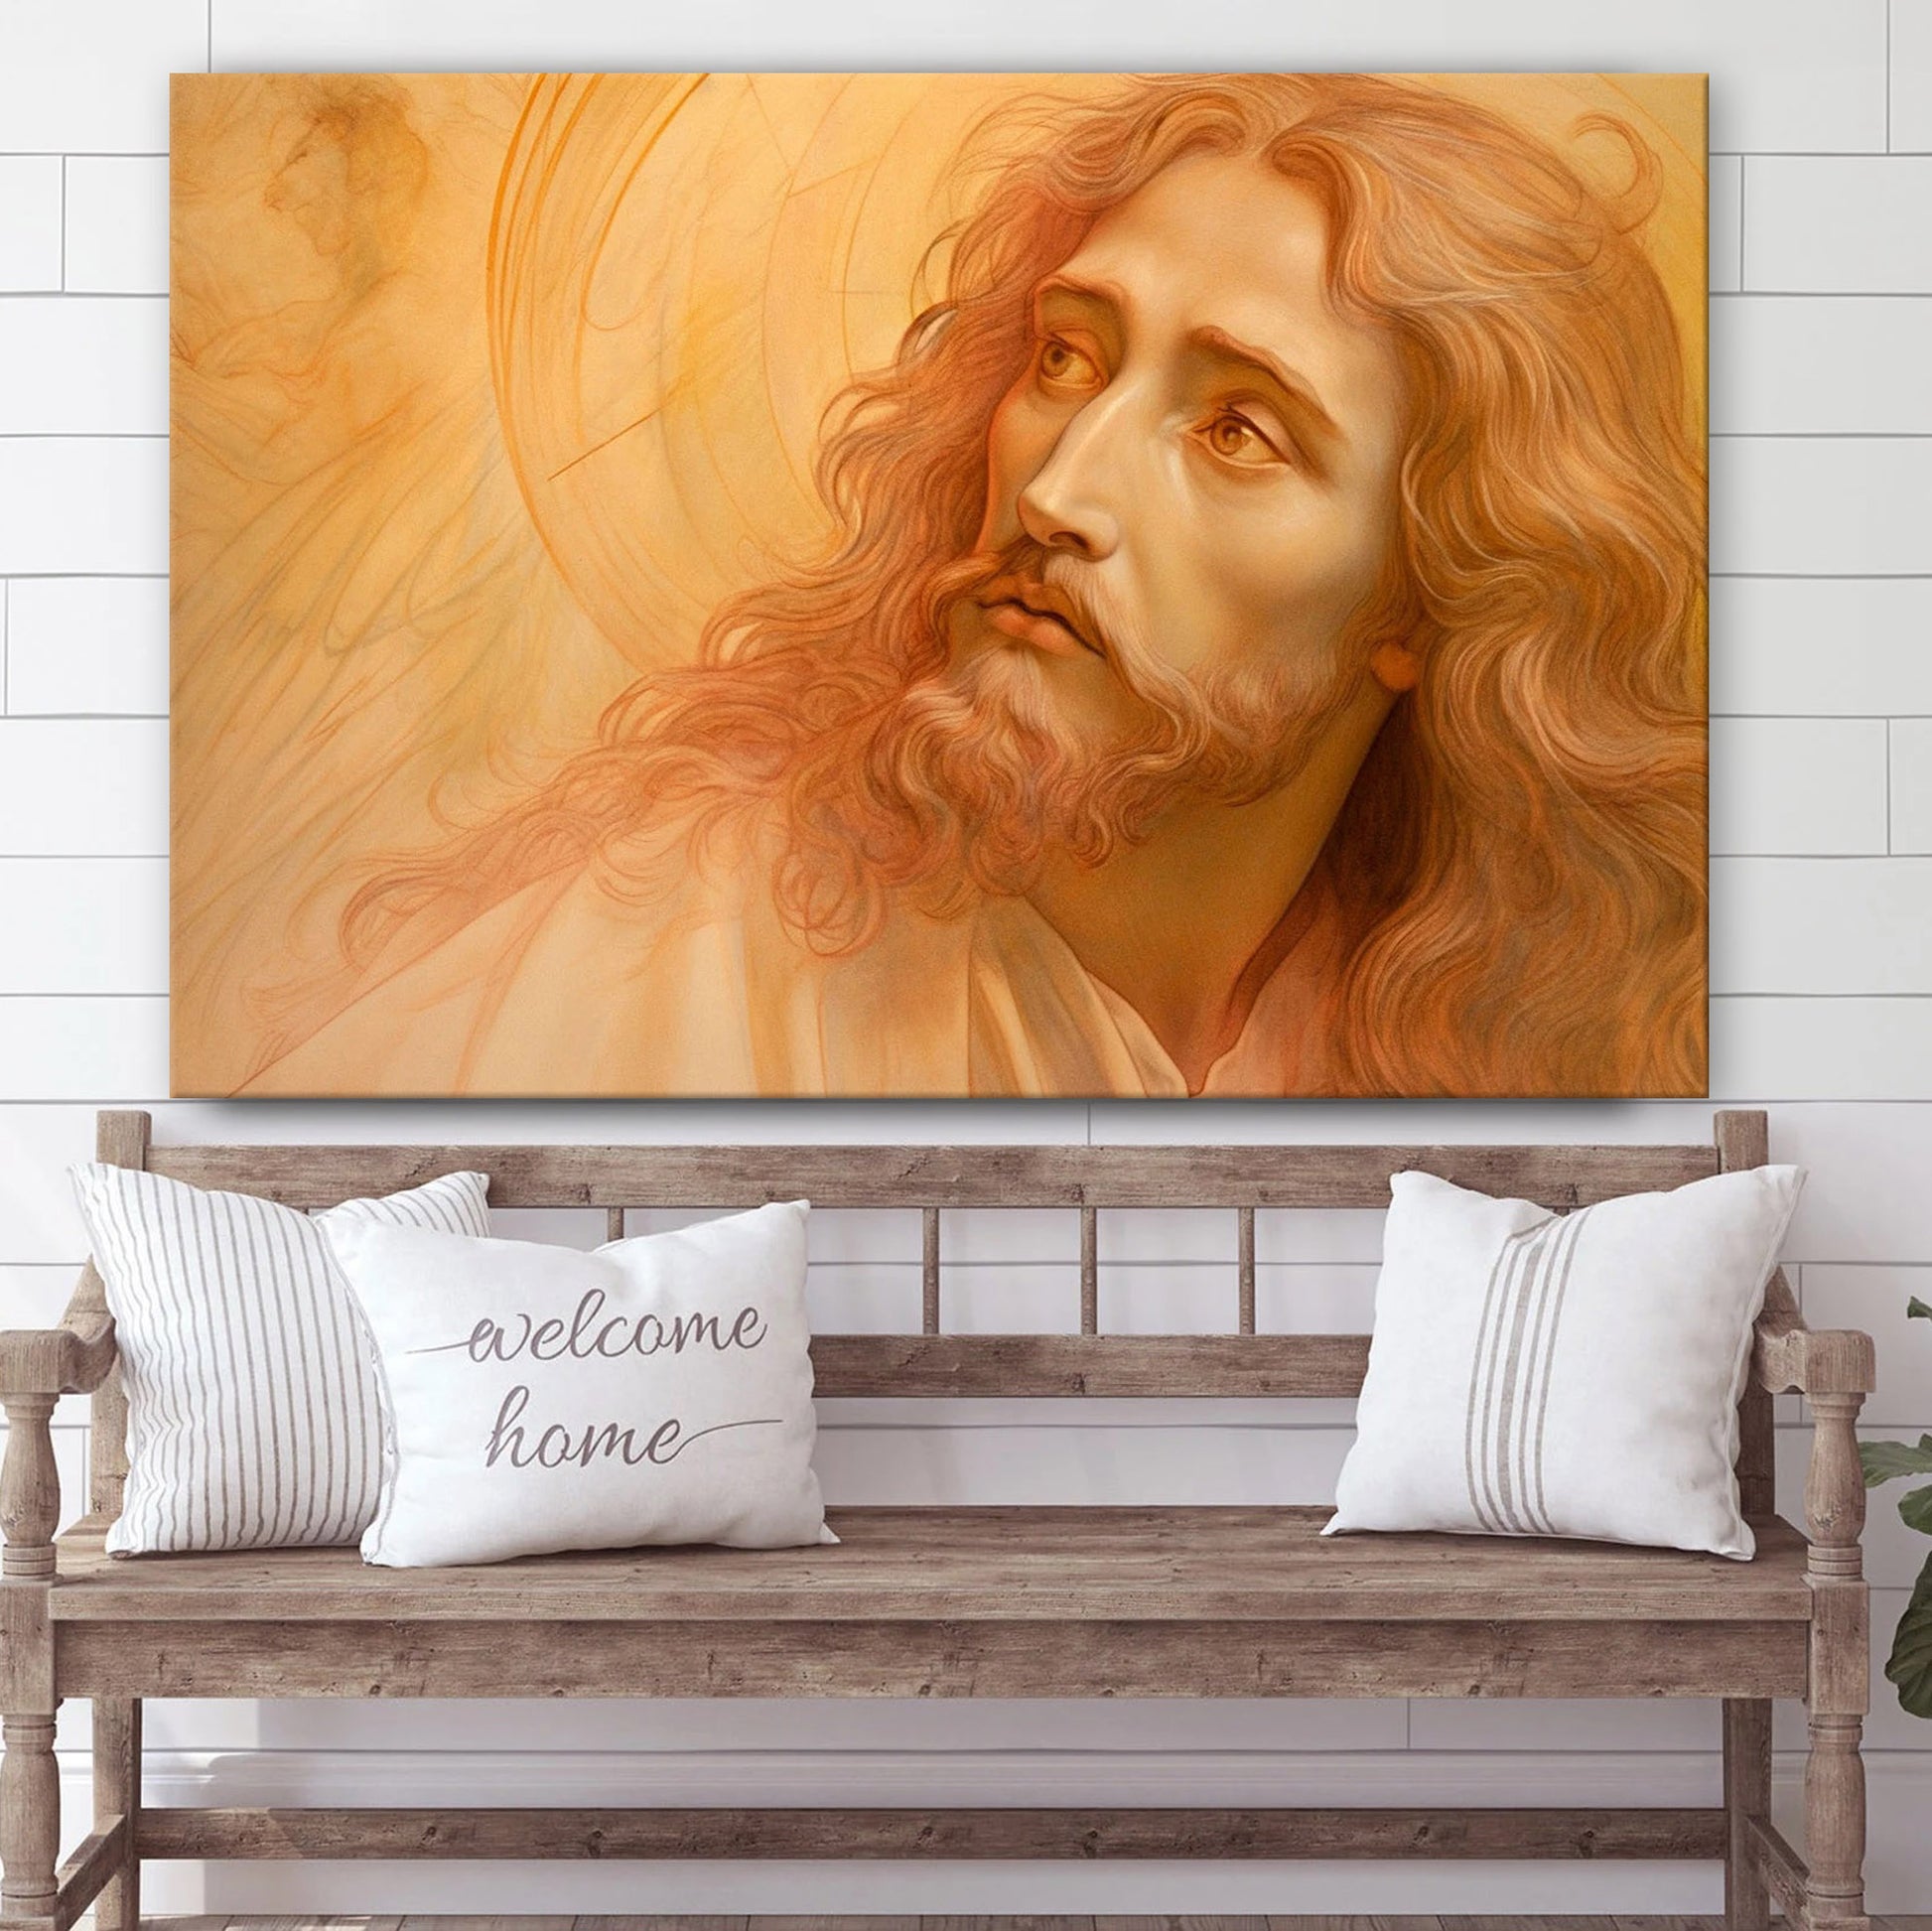 Portrait Of Jesus Christ Art Renaissance - Jesus Canvas Pictures - Christian Wall Art